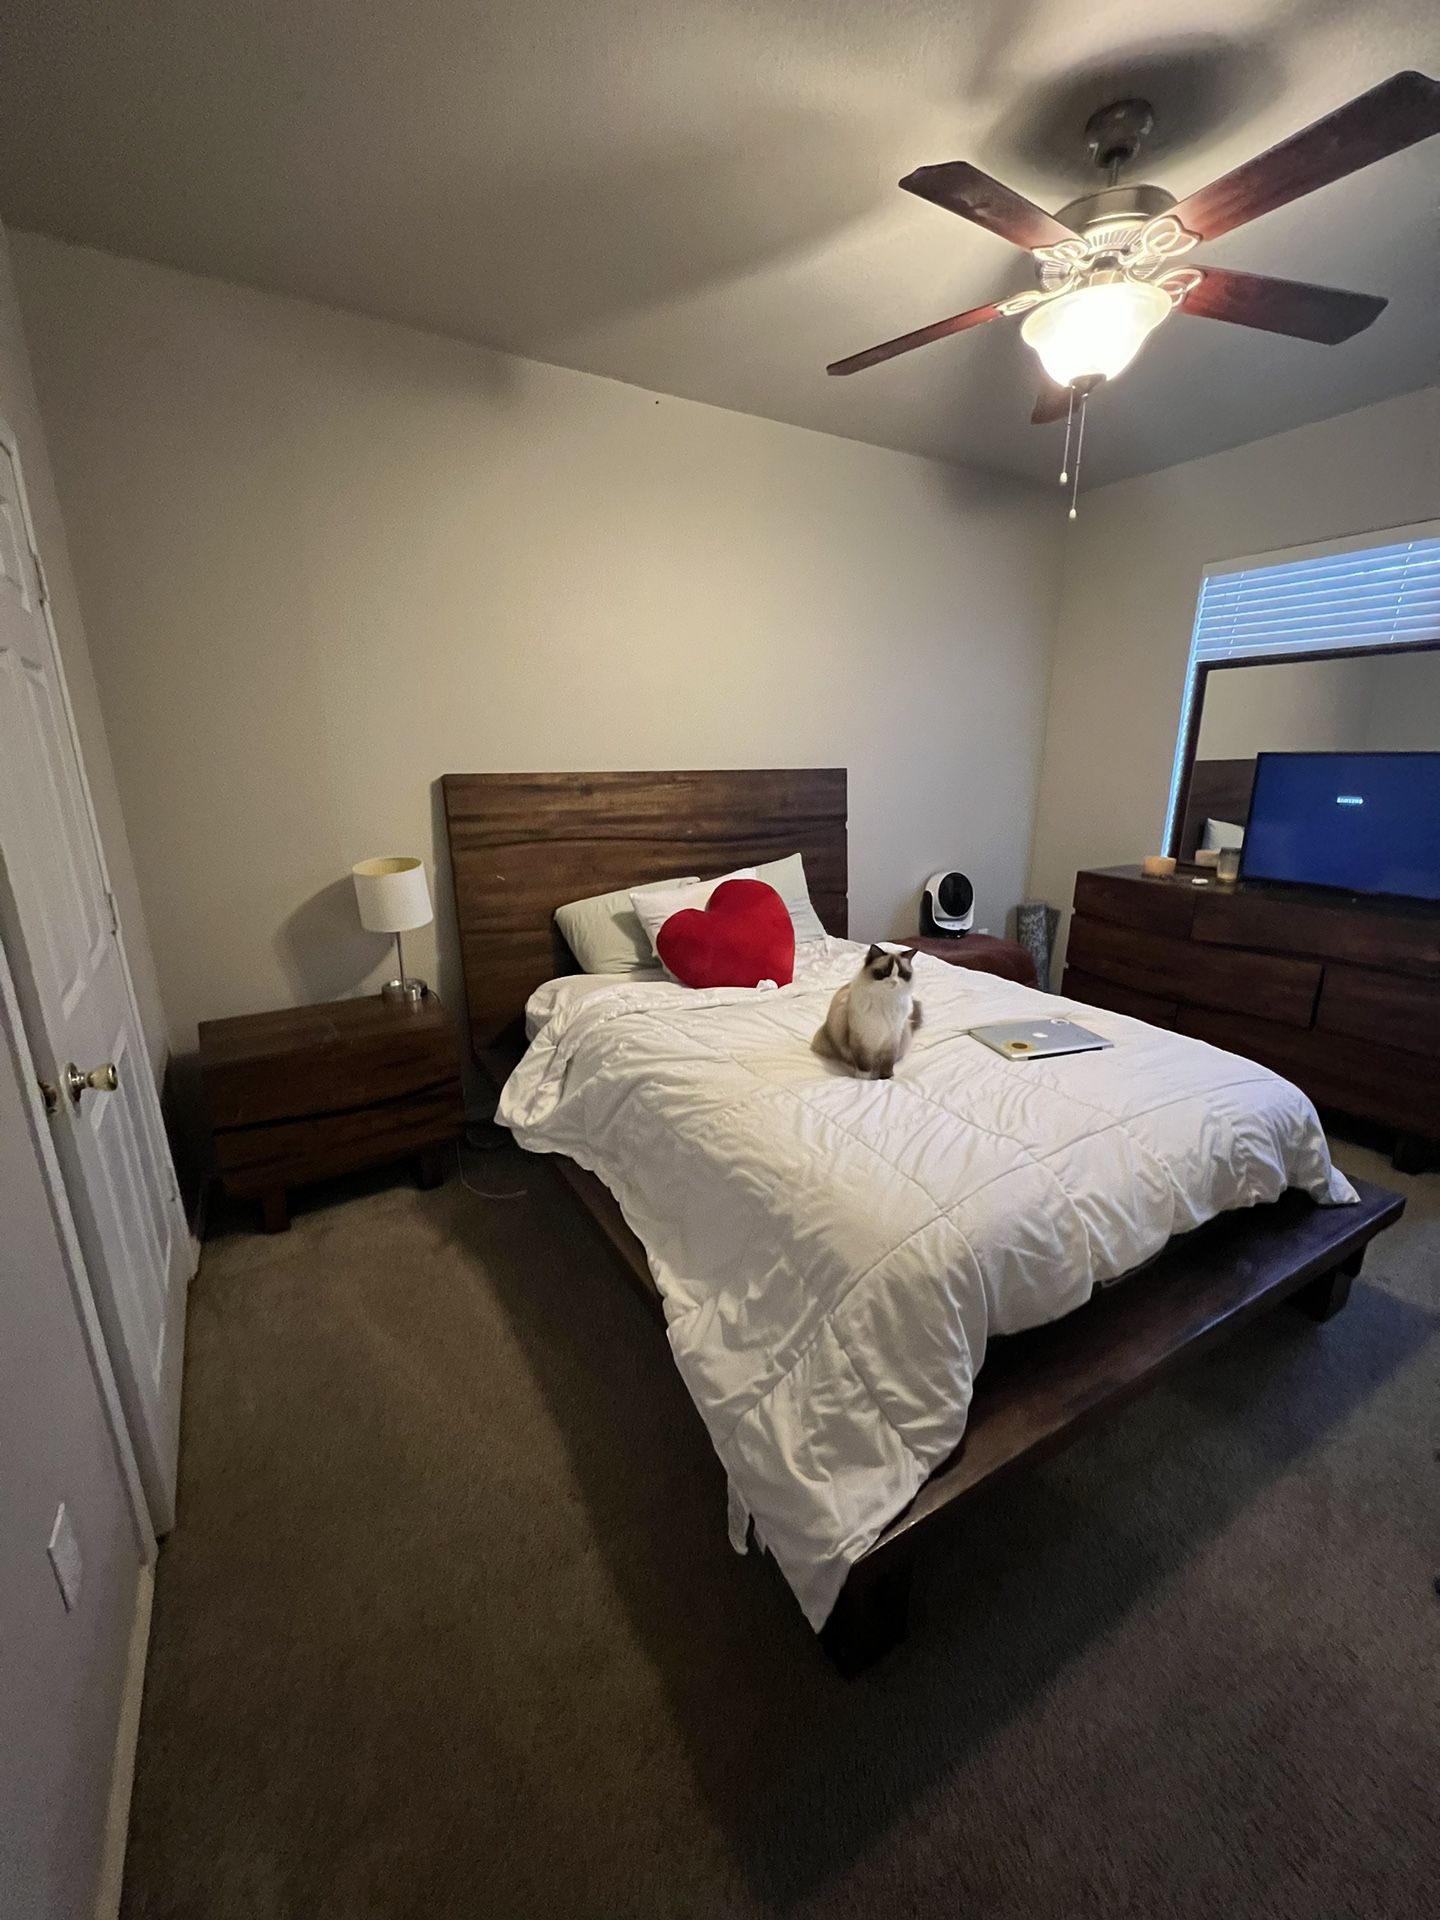 bedroom furniture set 